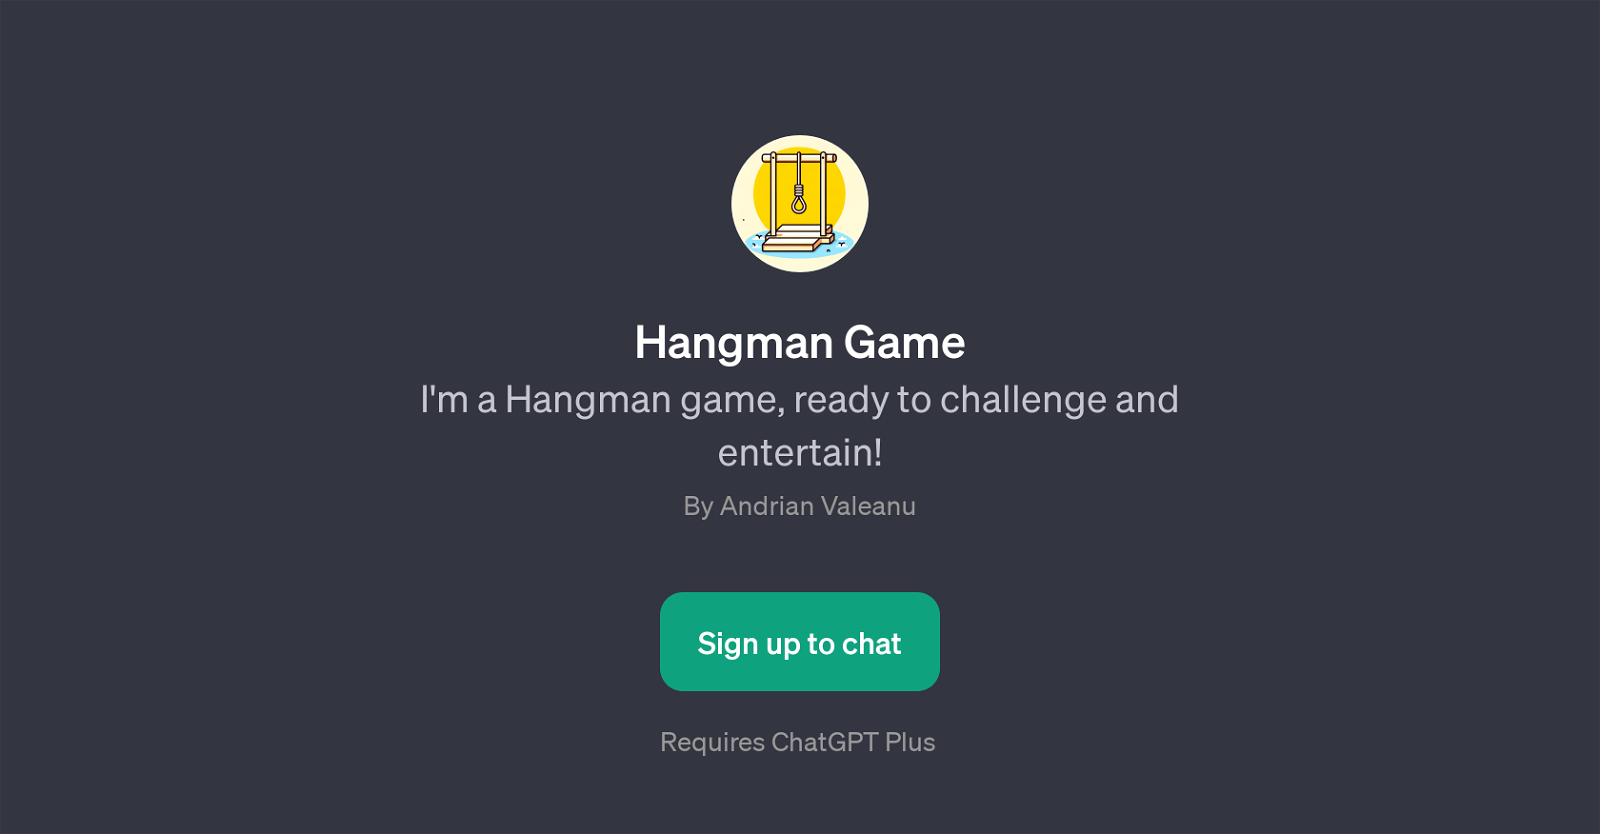 Hangman Game website